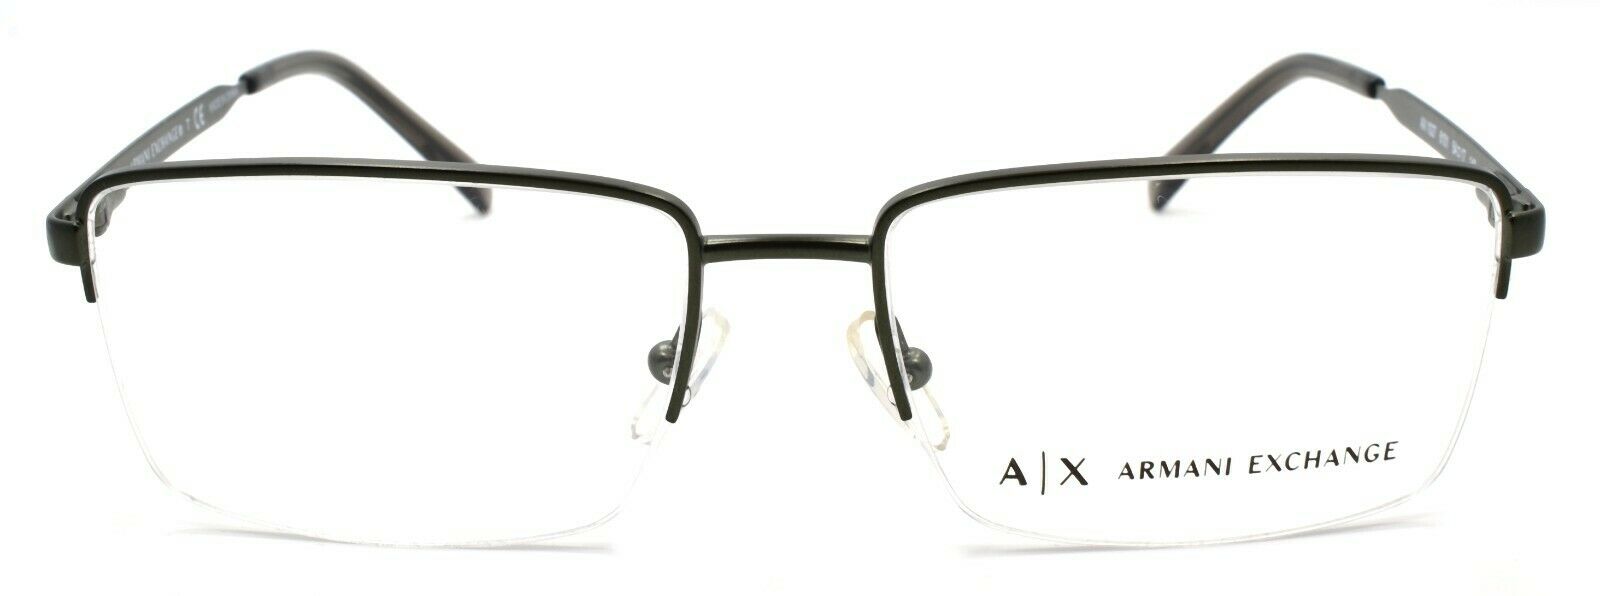 2-Armani Exchange AX1027 6101 Men's Glasses Frames Half-rim 54-17-140 Matte Olive-8053672798241-IKSpecs